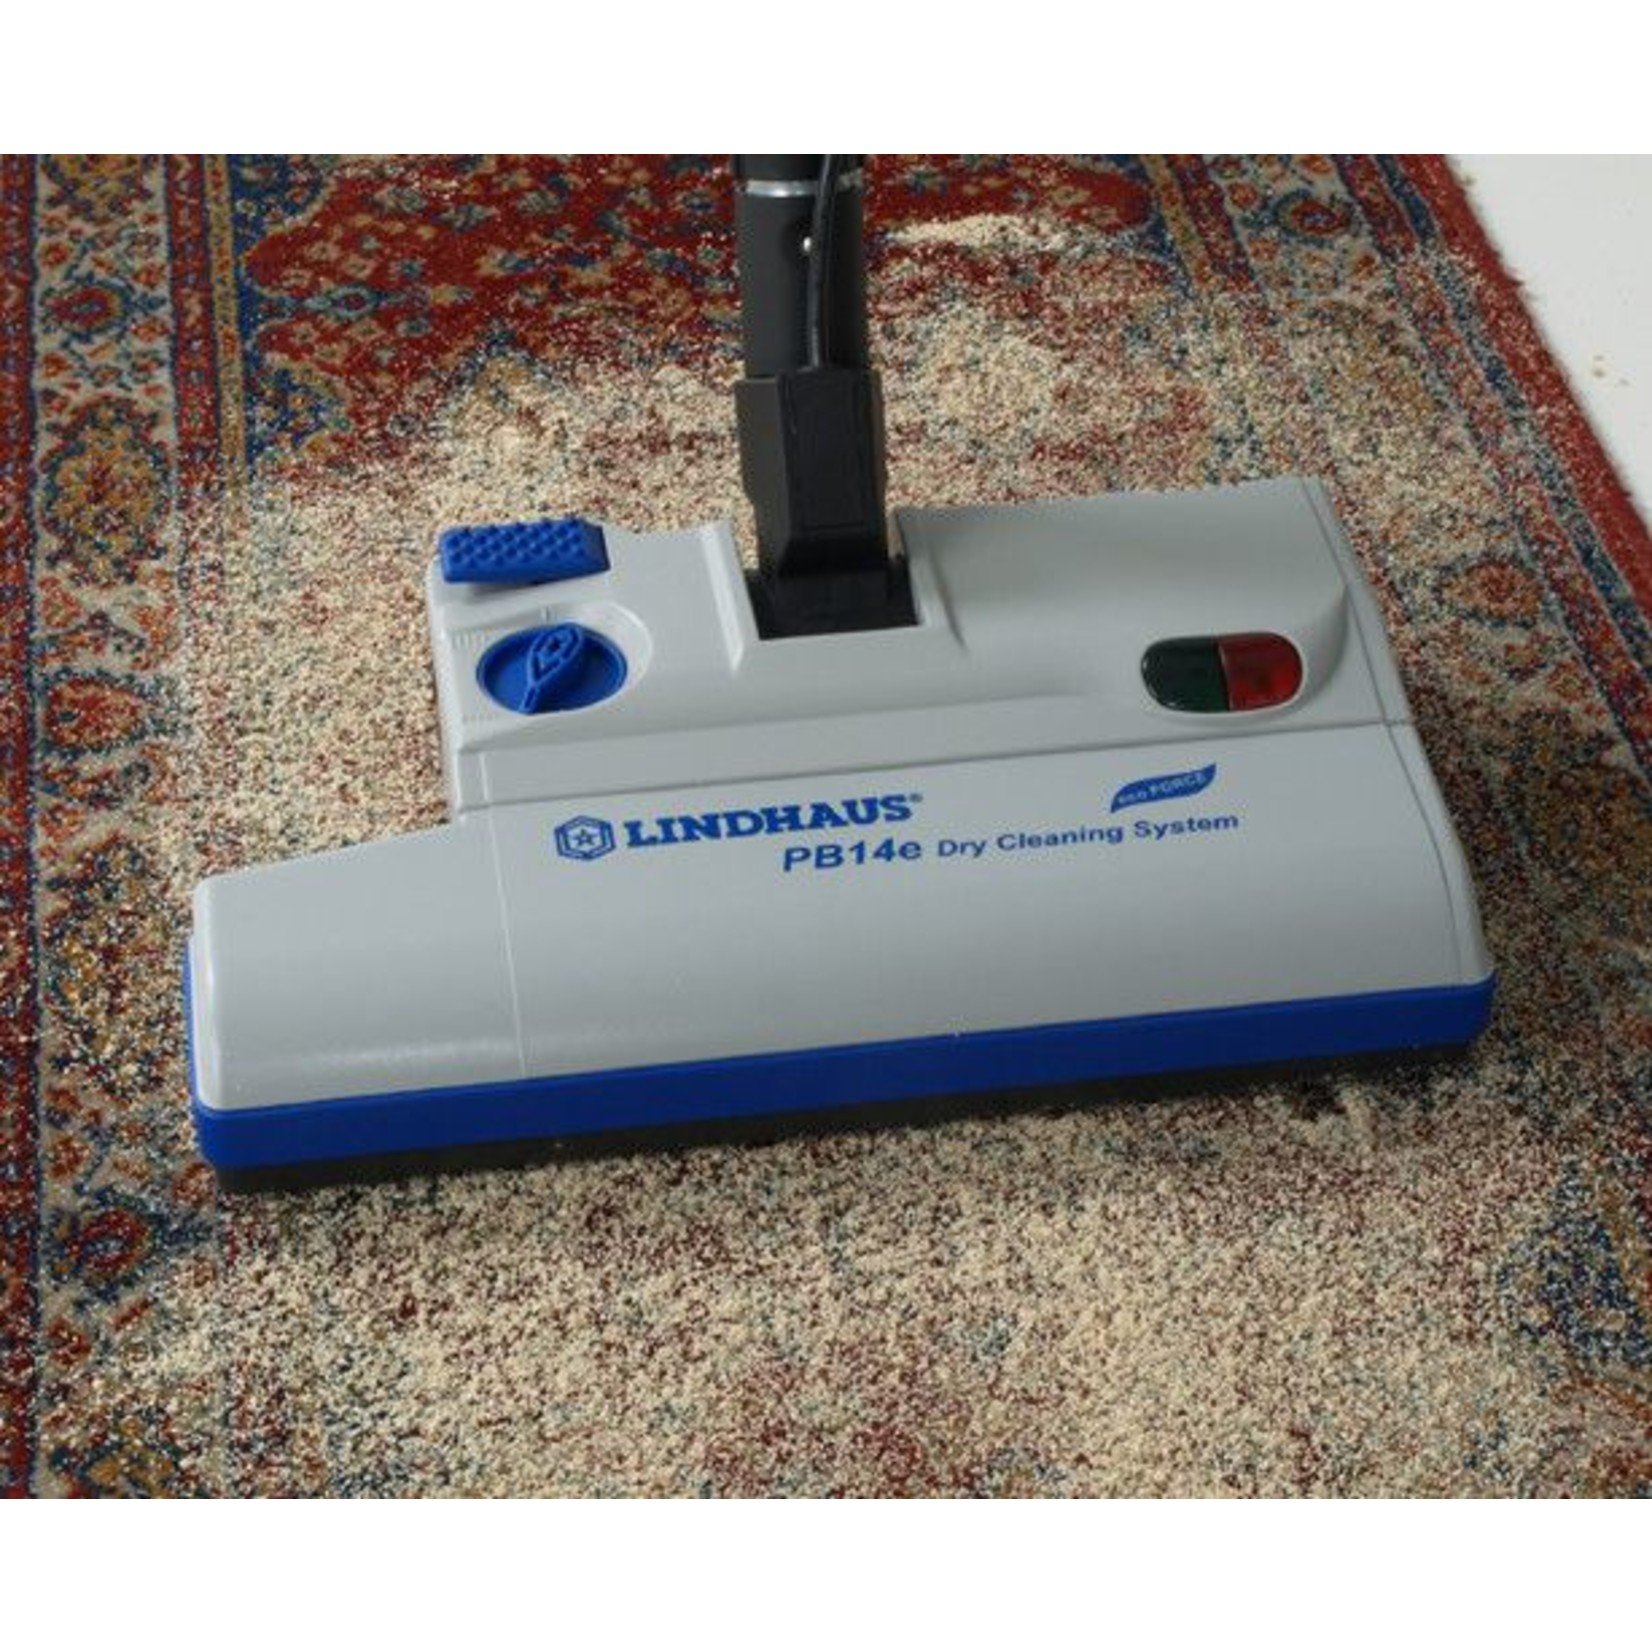 Lindhaus Lindhaus 14" Dry Carpet Cleaner - DCS